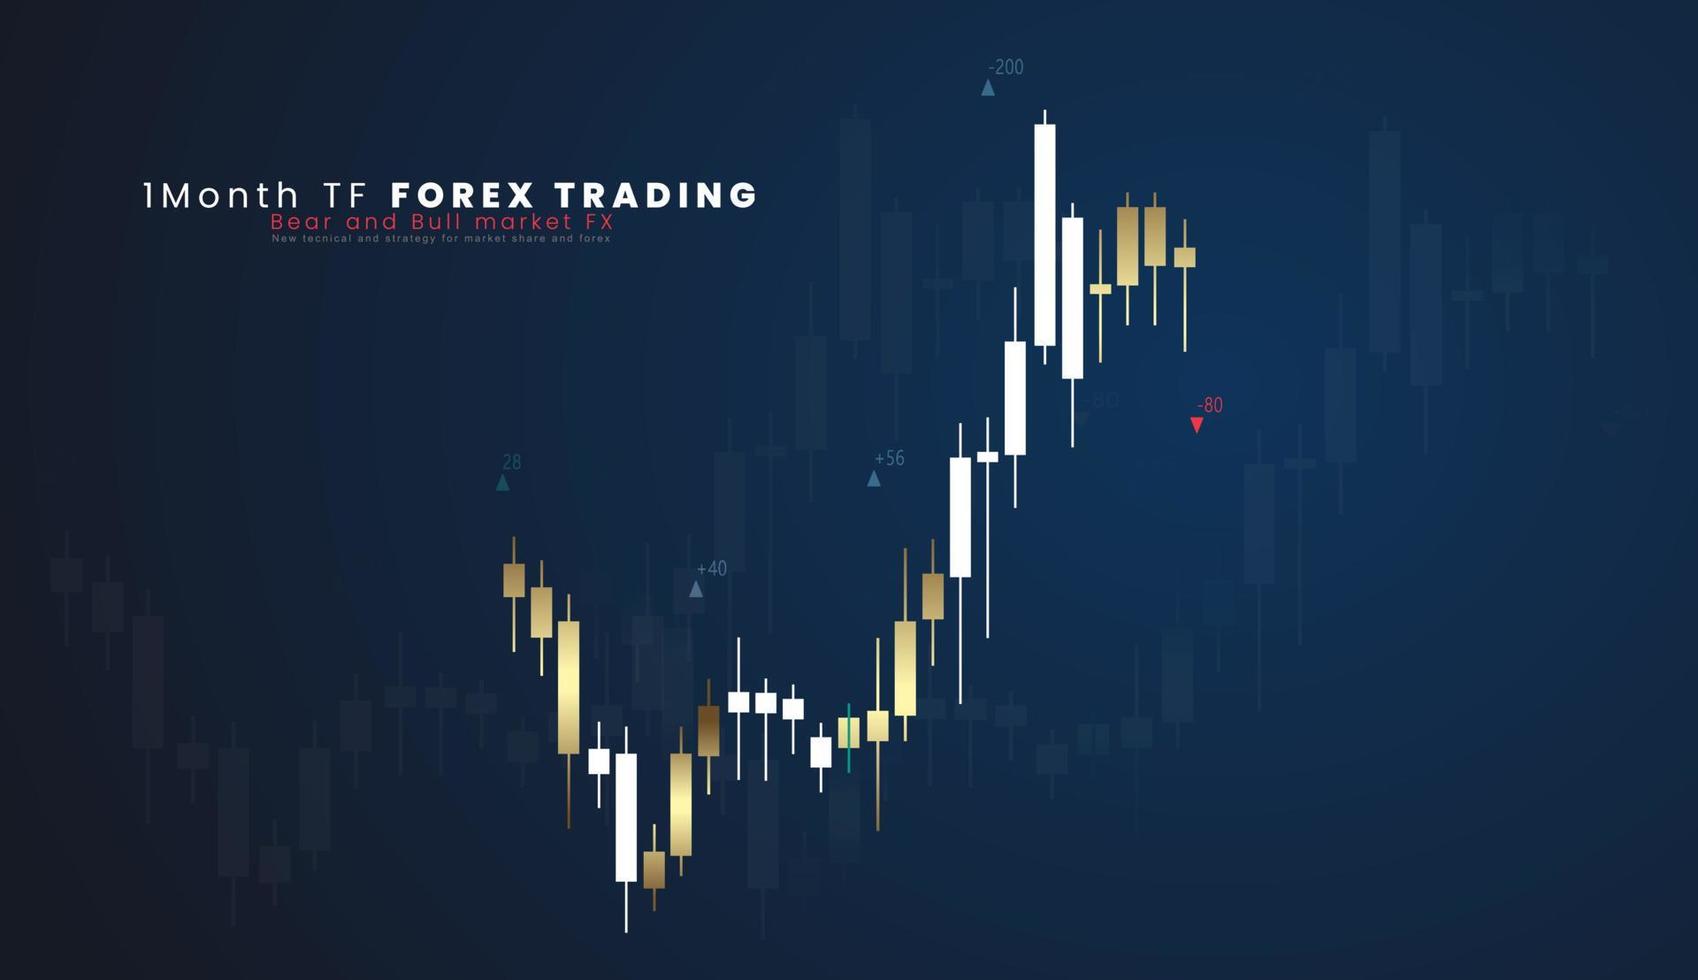 1 månad tf finansiell marknadsföra analys Graf på en värld Karta bakgrund, skala av bitar och stock marknader, handlare instrumentbräda, vektor illustration